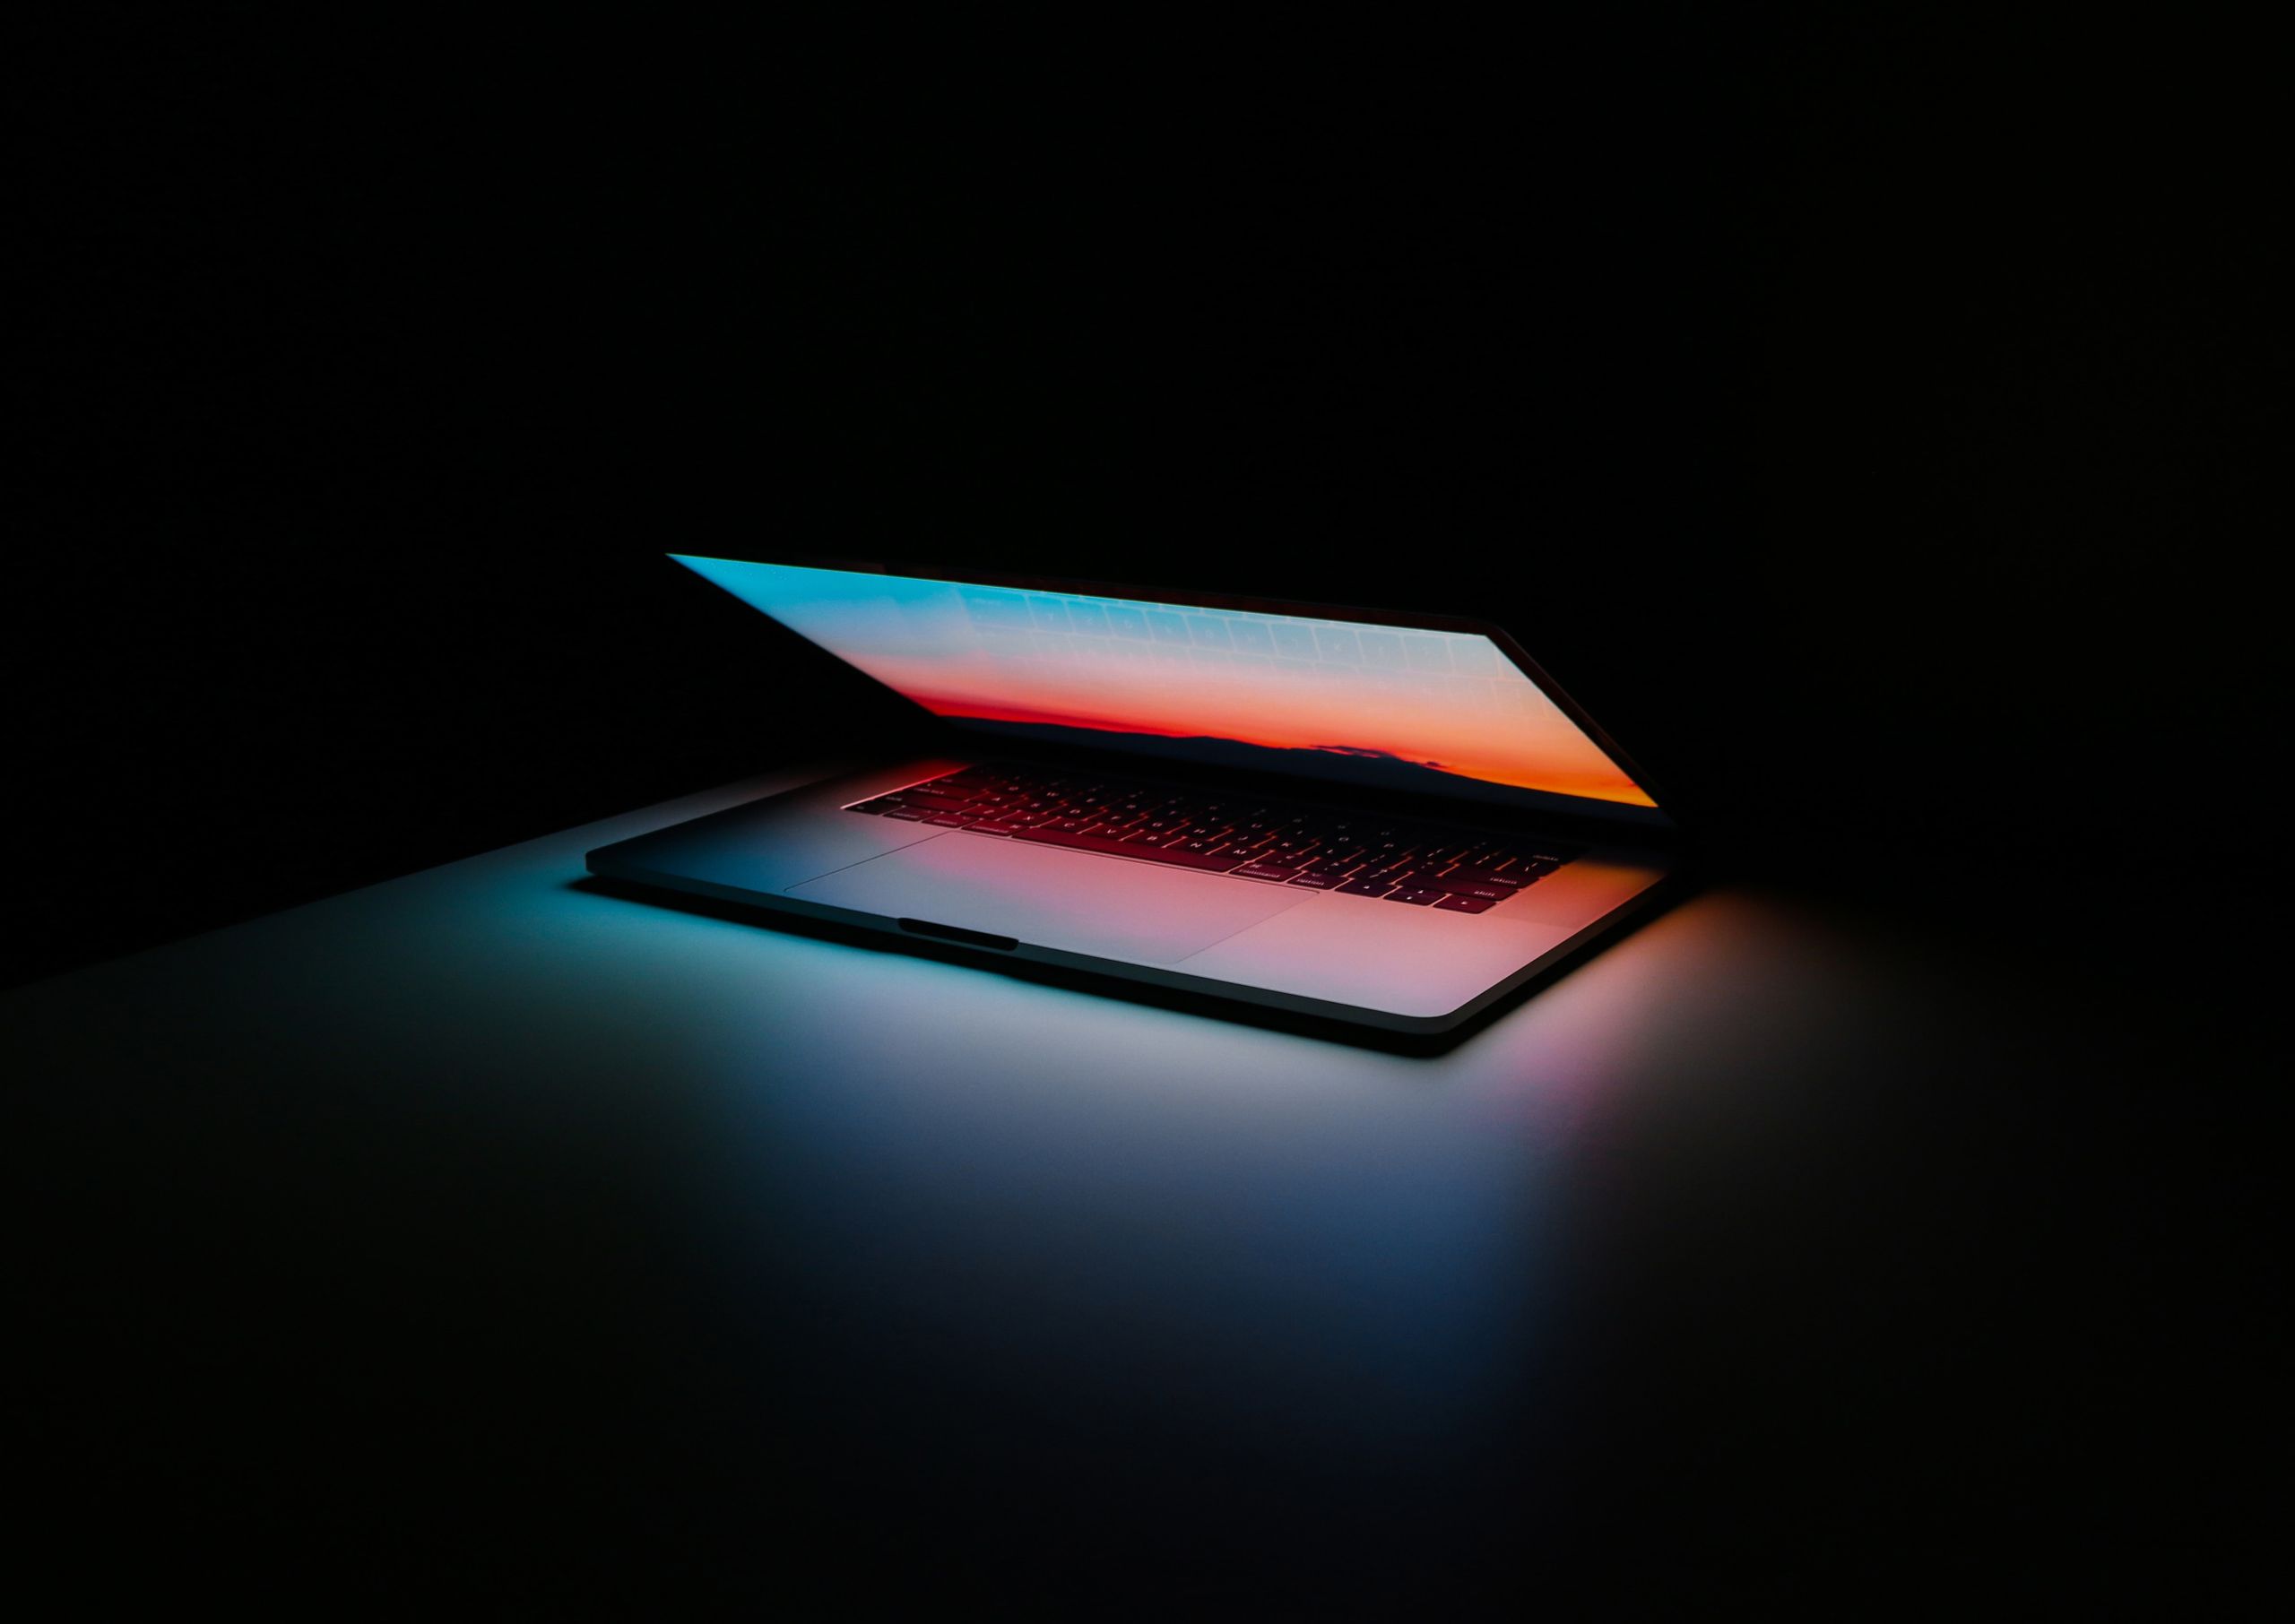 laptop 1/2 open in a dark space